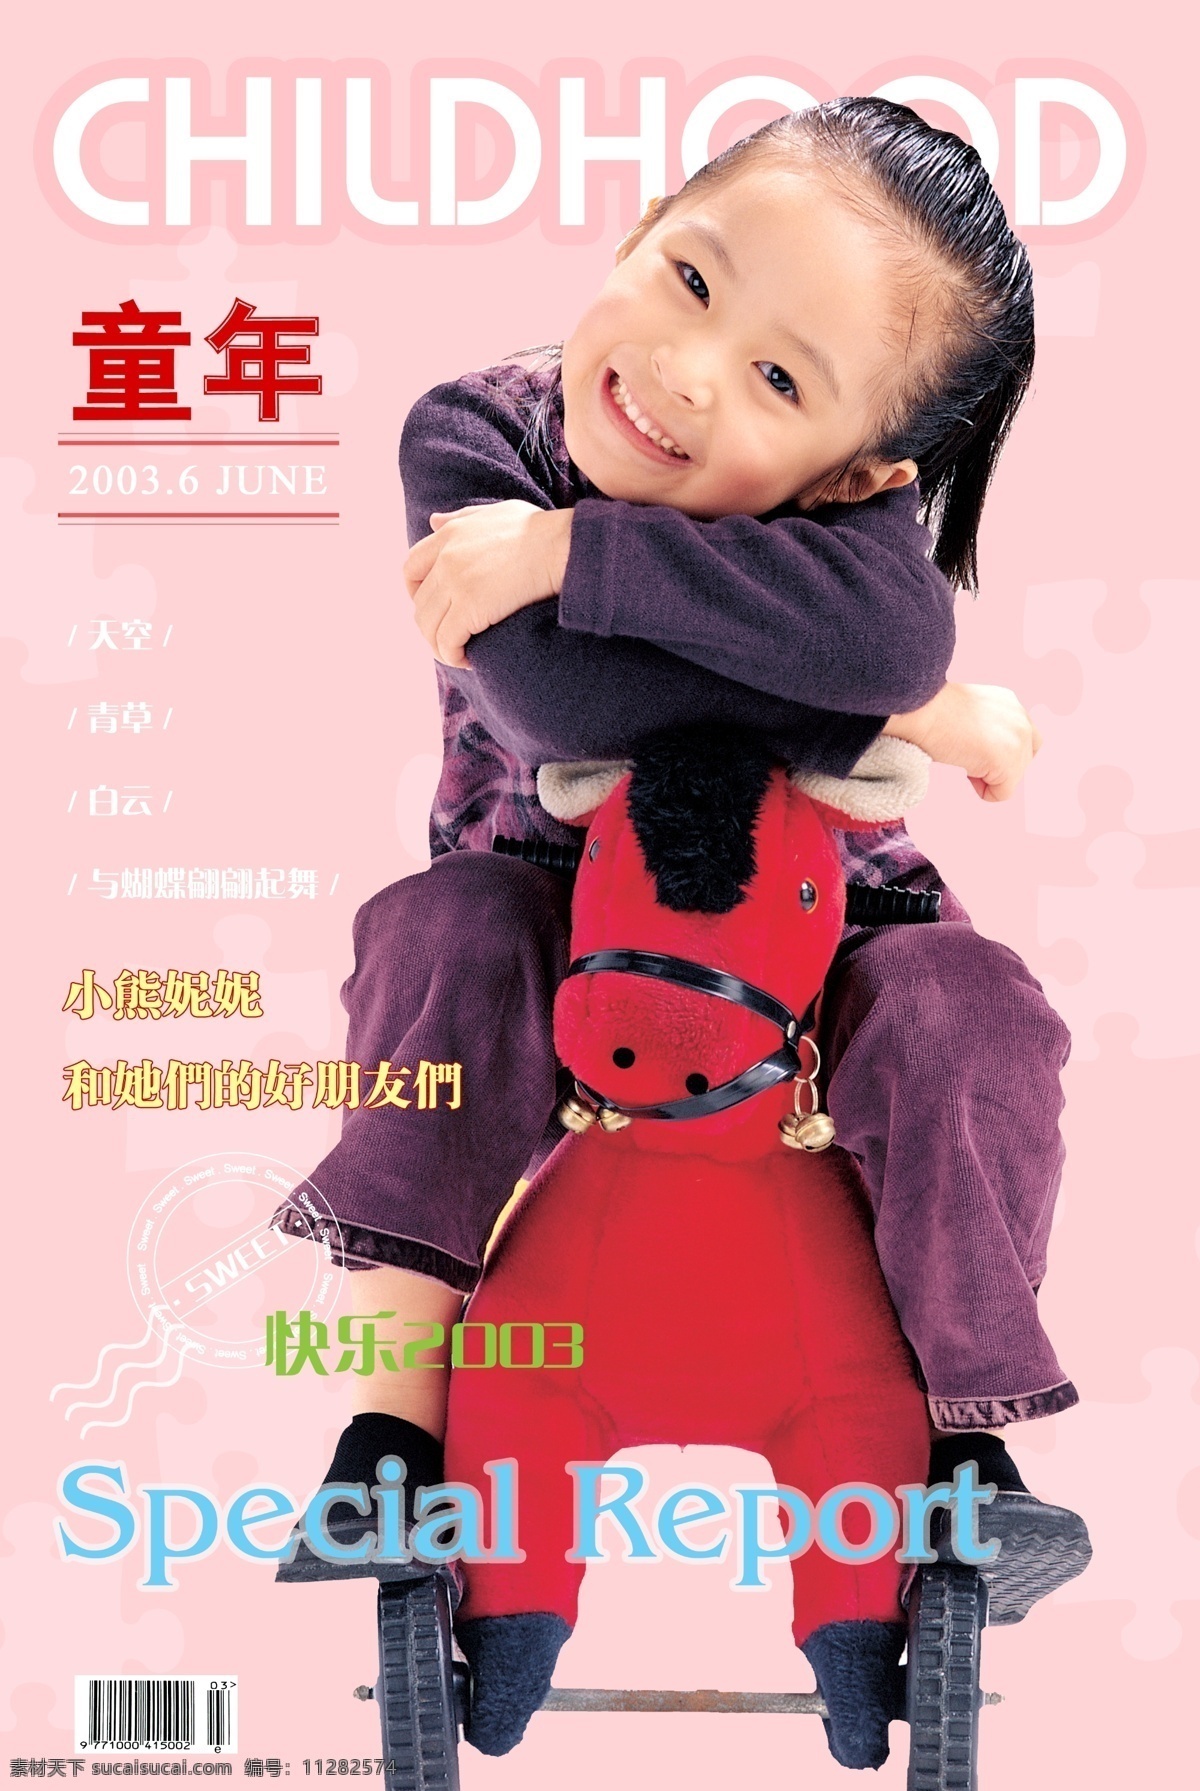 儿童 分层 模版 可爱 宝宝 照片 背景 psd源文件 婚纱 写真 相册 模板